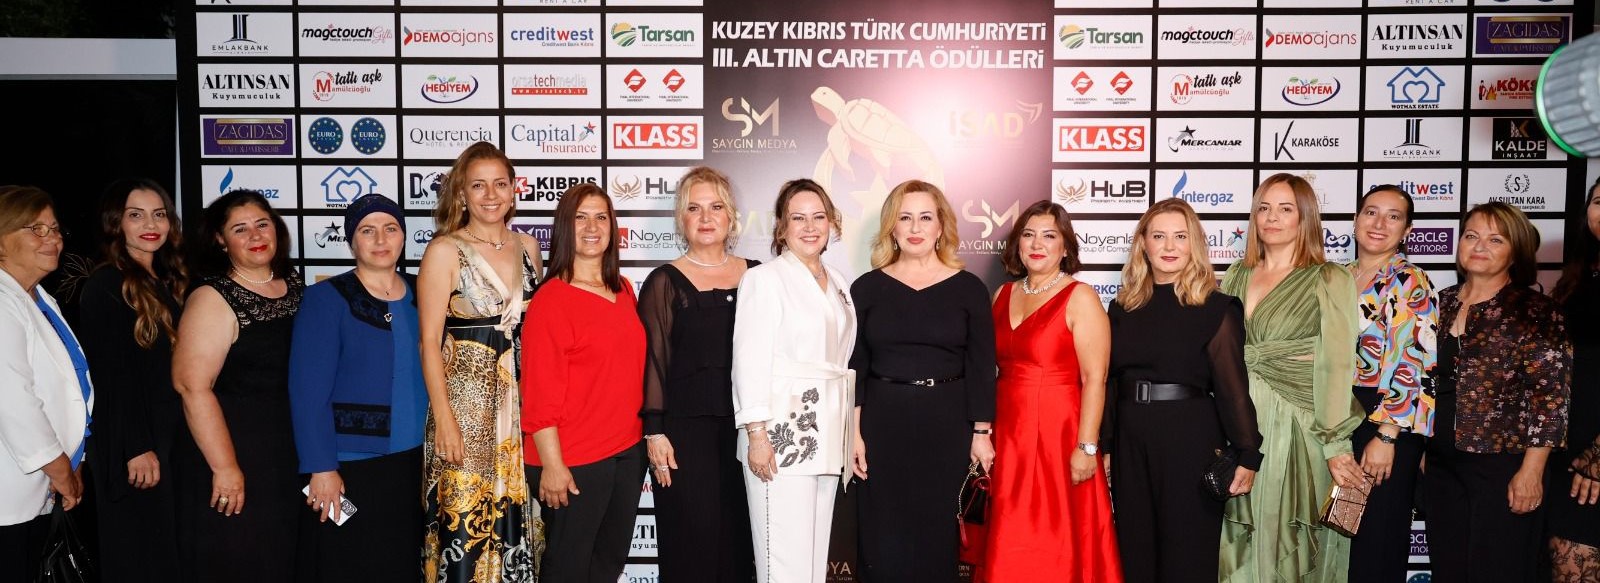 Kuzey Kıbrıs 3. Altın Caretta Yaşam ve Turizm Ödülleri sahiplerine verildi